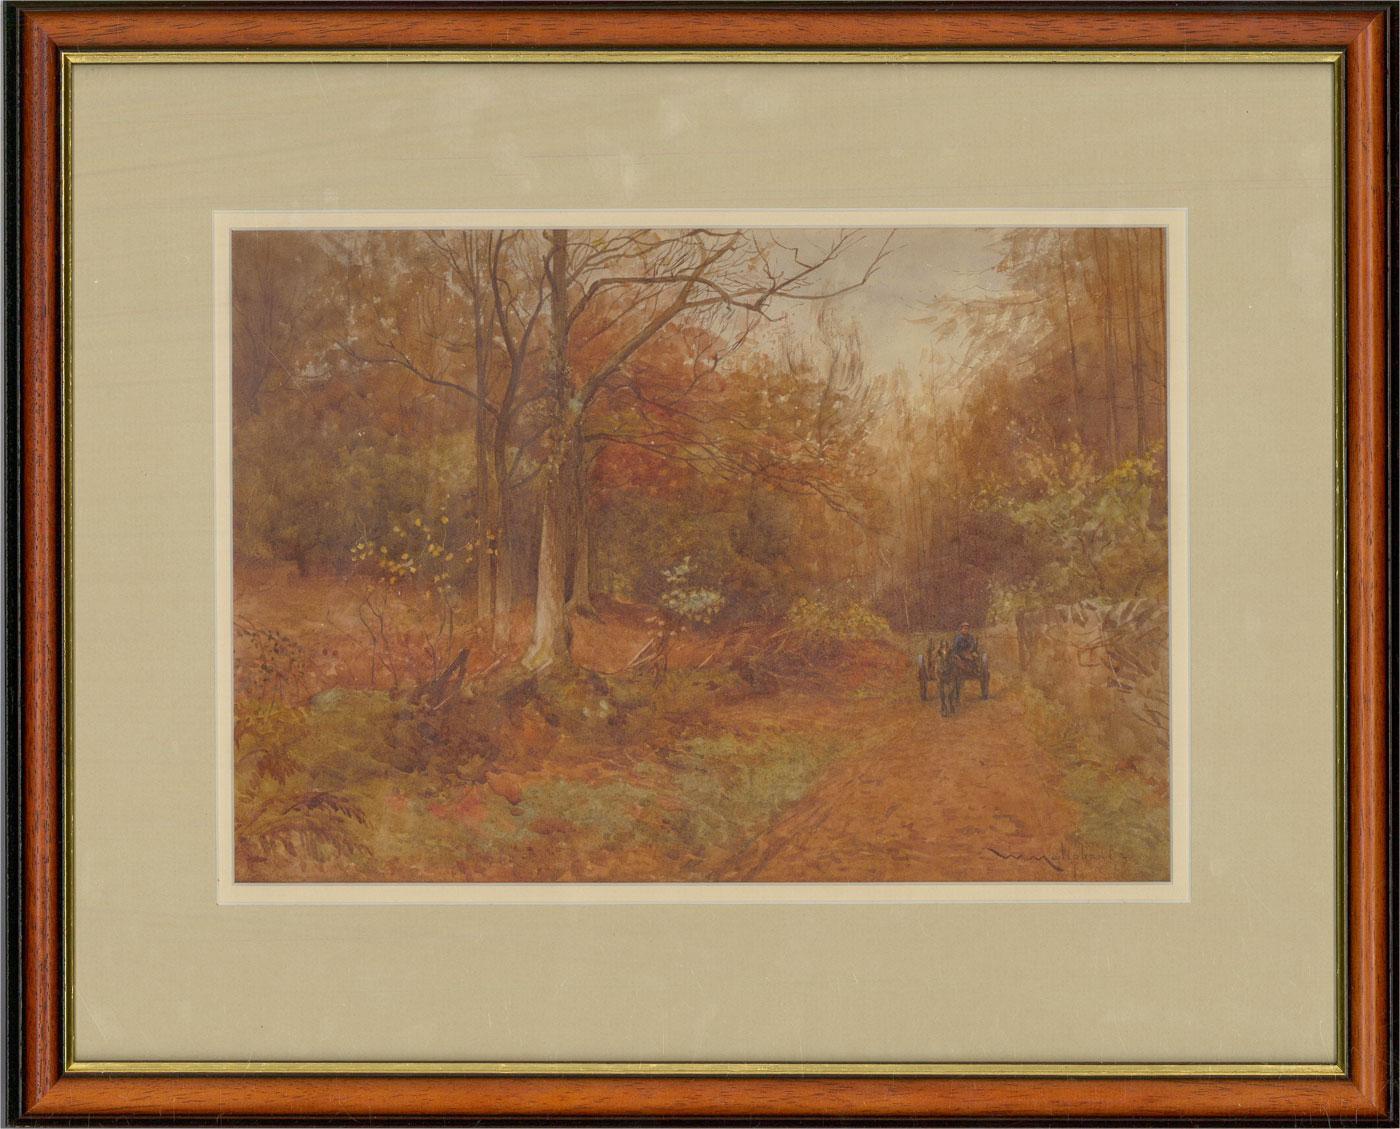 Ein charmantes Aquarell des Künstlers William Maliphant aus dem späten 19. Jahrhundert, das einen Pferdewagen auf einem Waldweg abbildet. Signiert und datiert in der rechten unteren Ecke. Gut präsentiert in einem feinen Holzrahmen mit vergoldeten